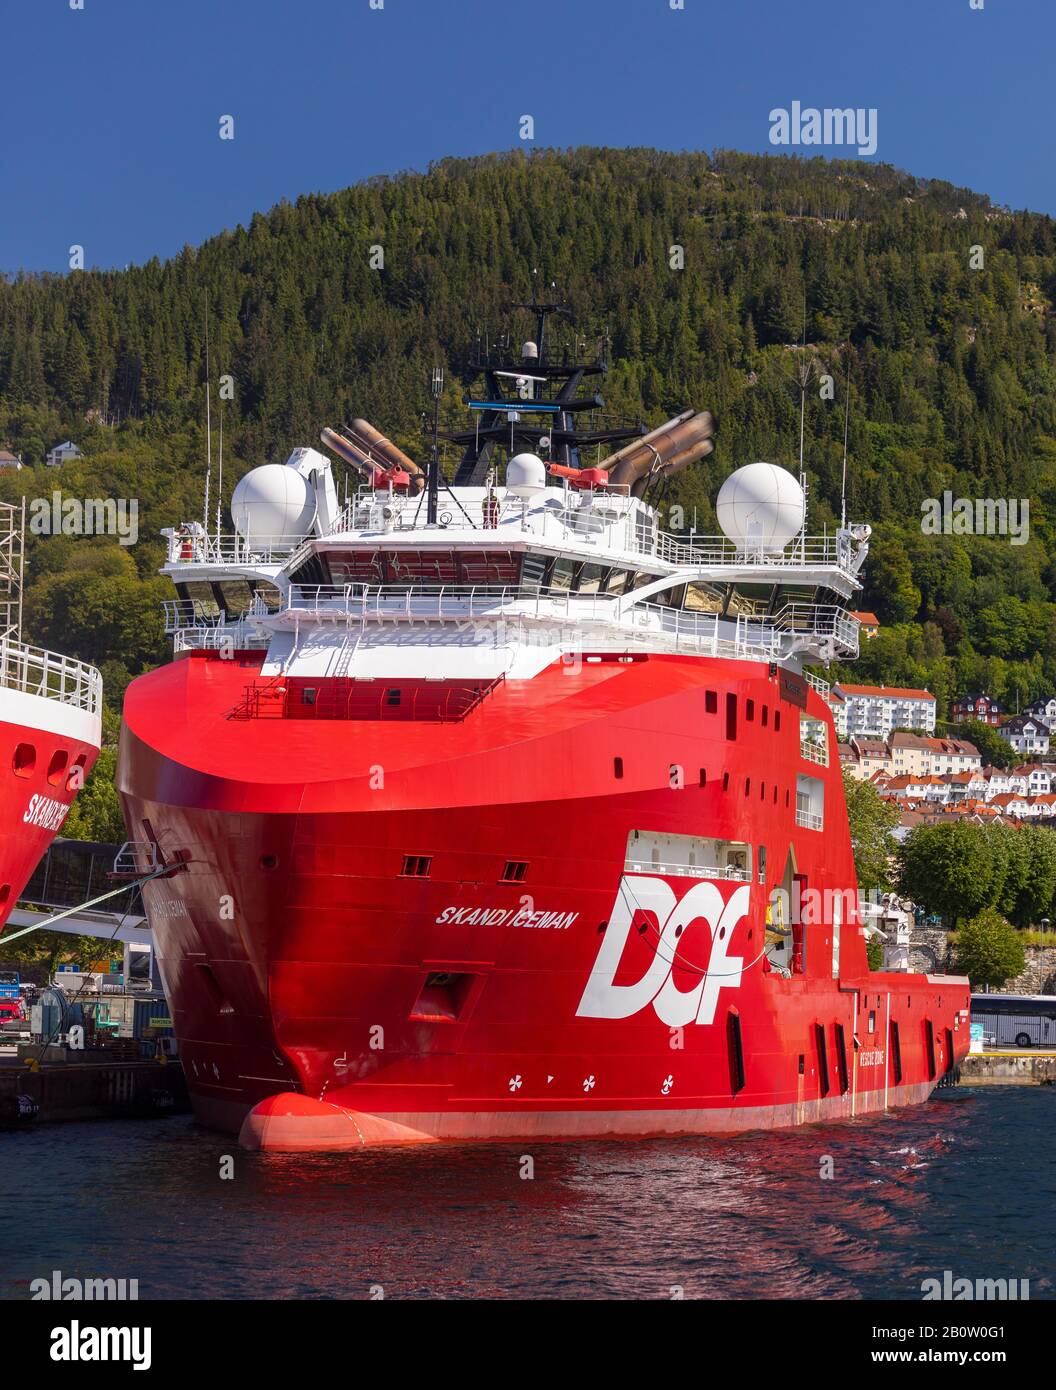 Bergen, NORUEGA - Barco comercial Scandi Iceman, un buque de manejo de anclas en aguas profundas, atracado en el puerto. Foto de stock